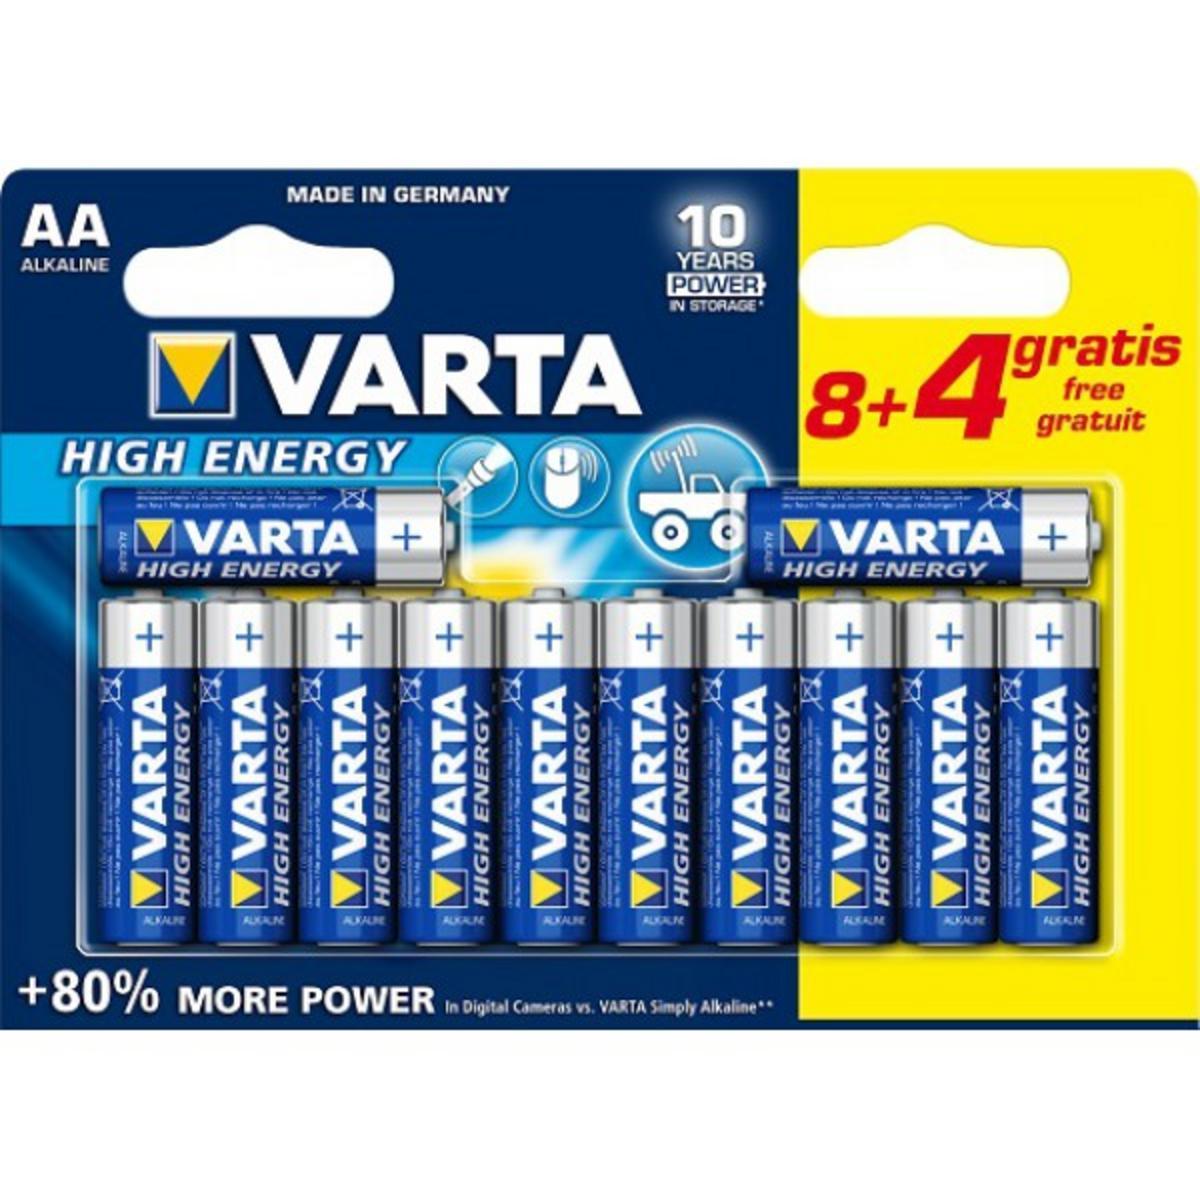 8 piles Varta AA LR06 + 4 gratuites